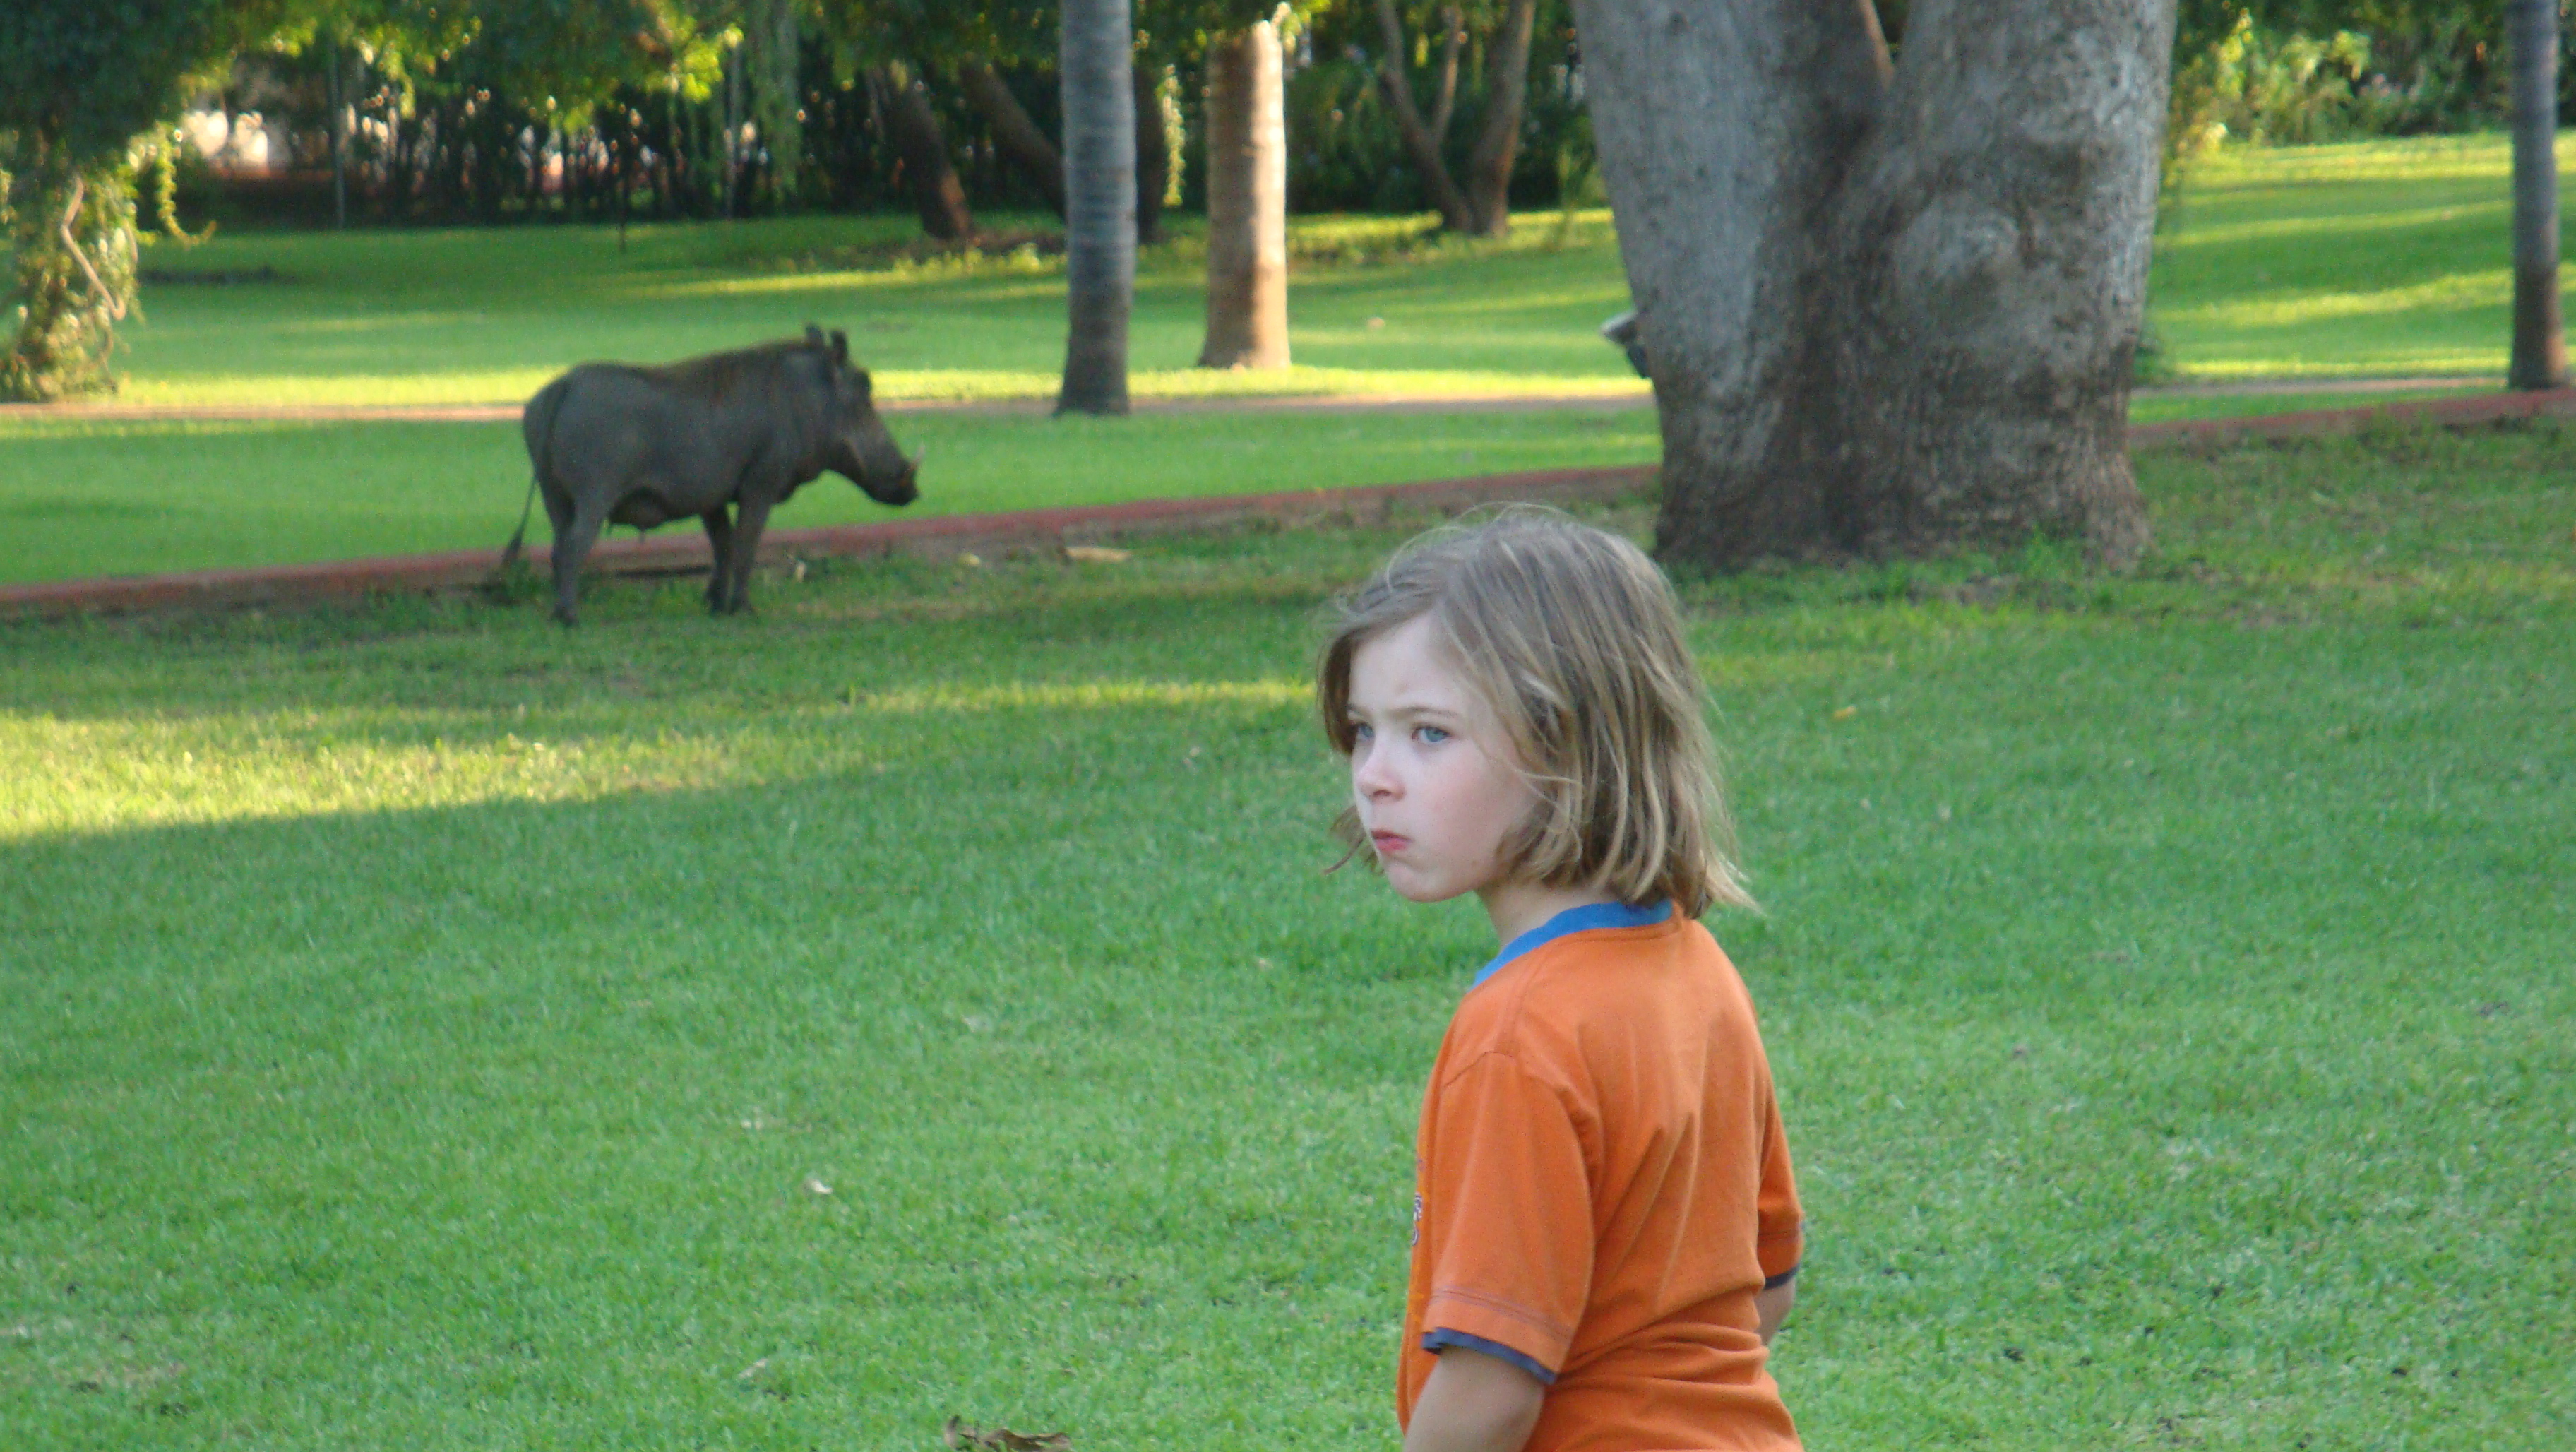 Warzenschwein im Garten des Victoria Falls Hotels in Simbabwe